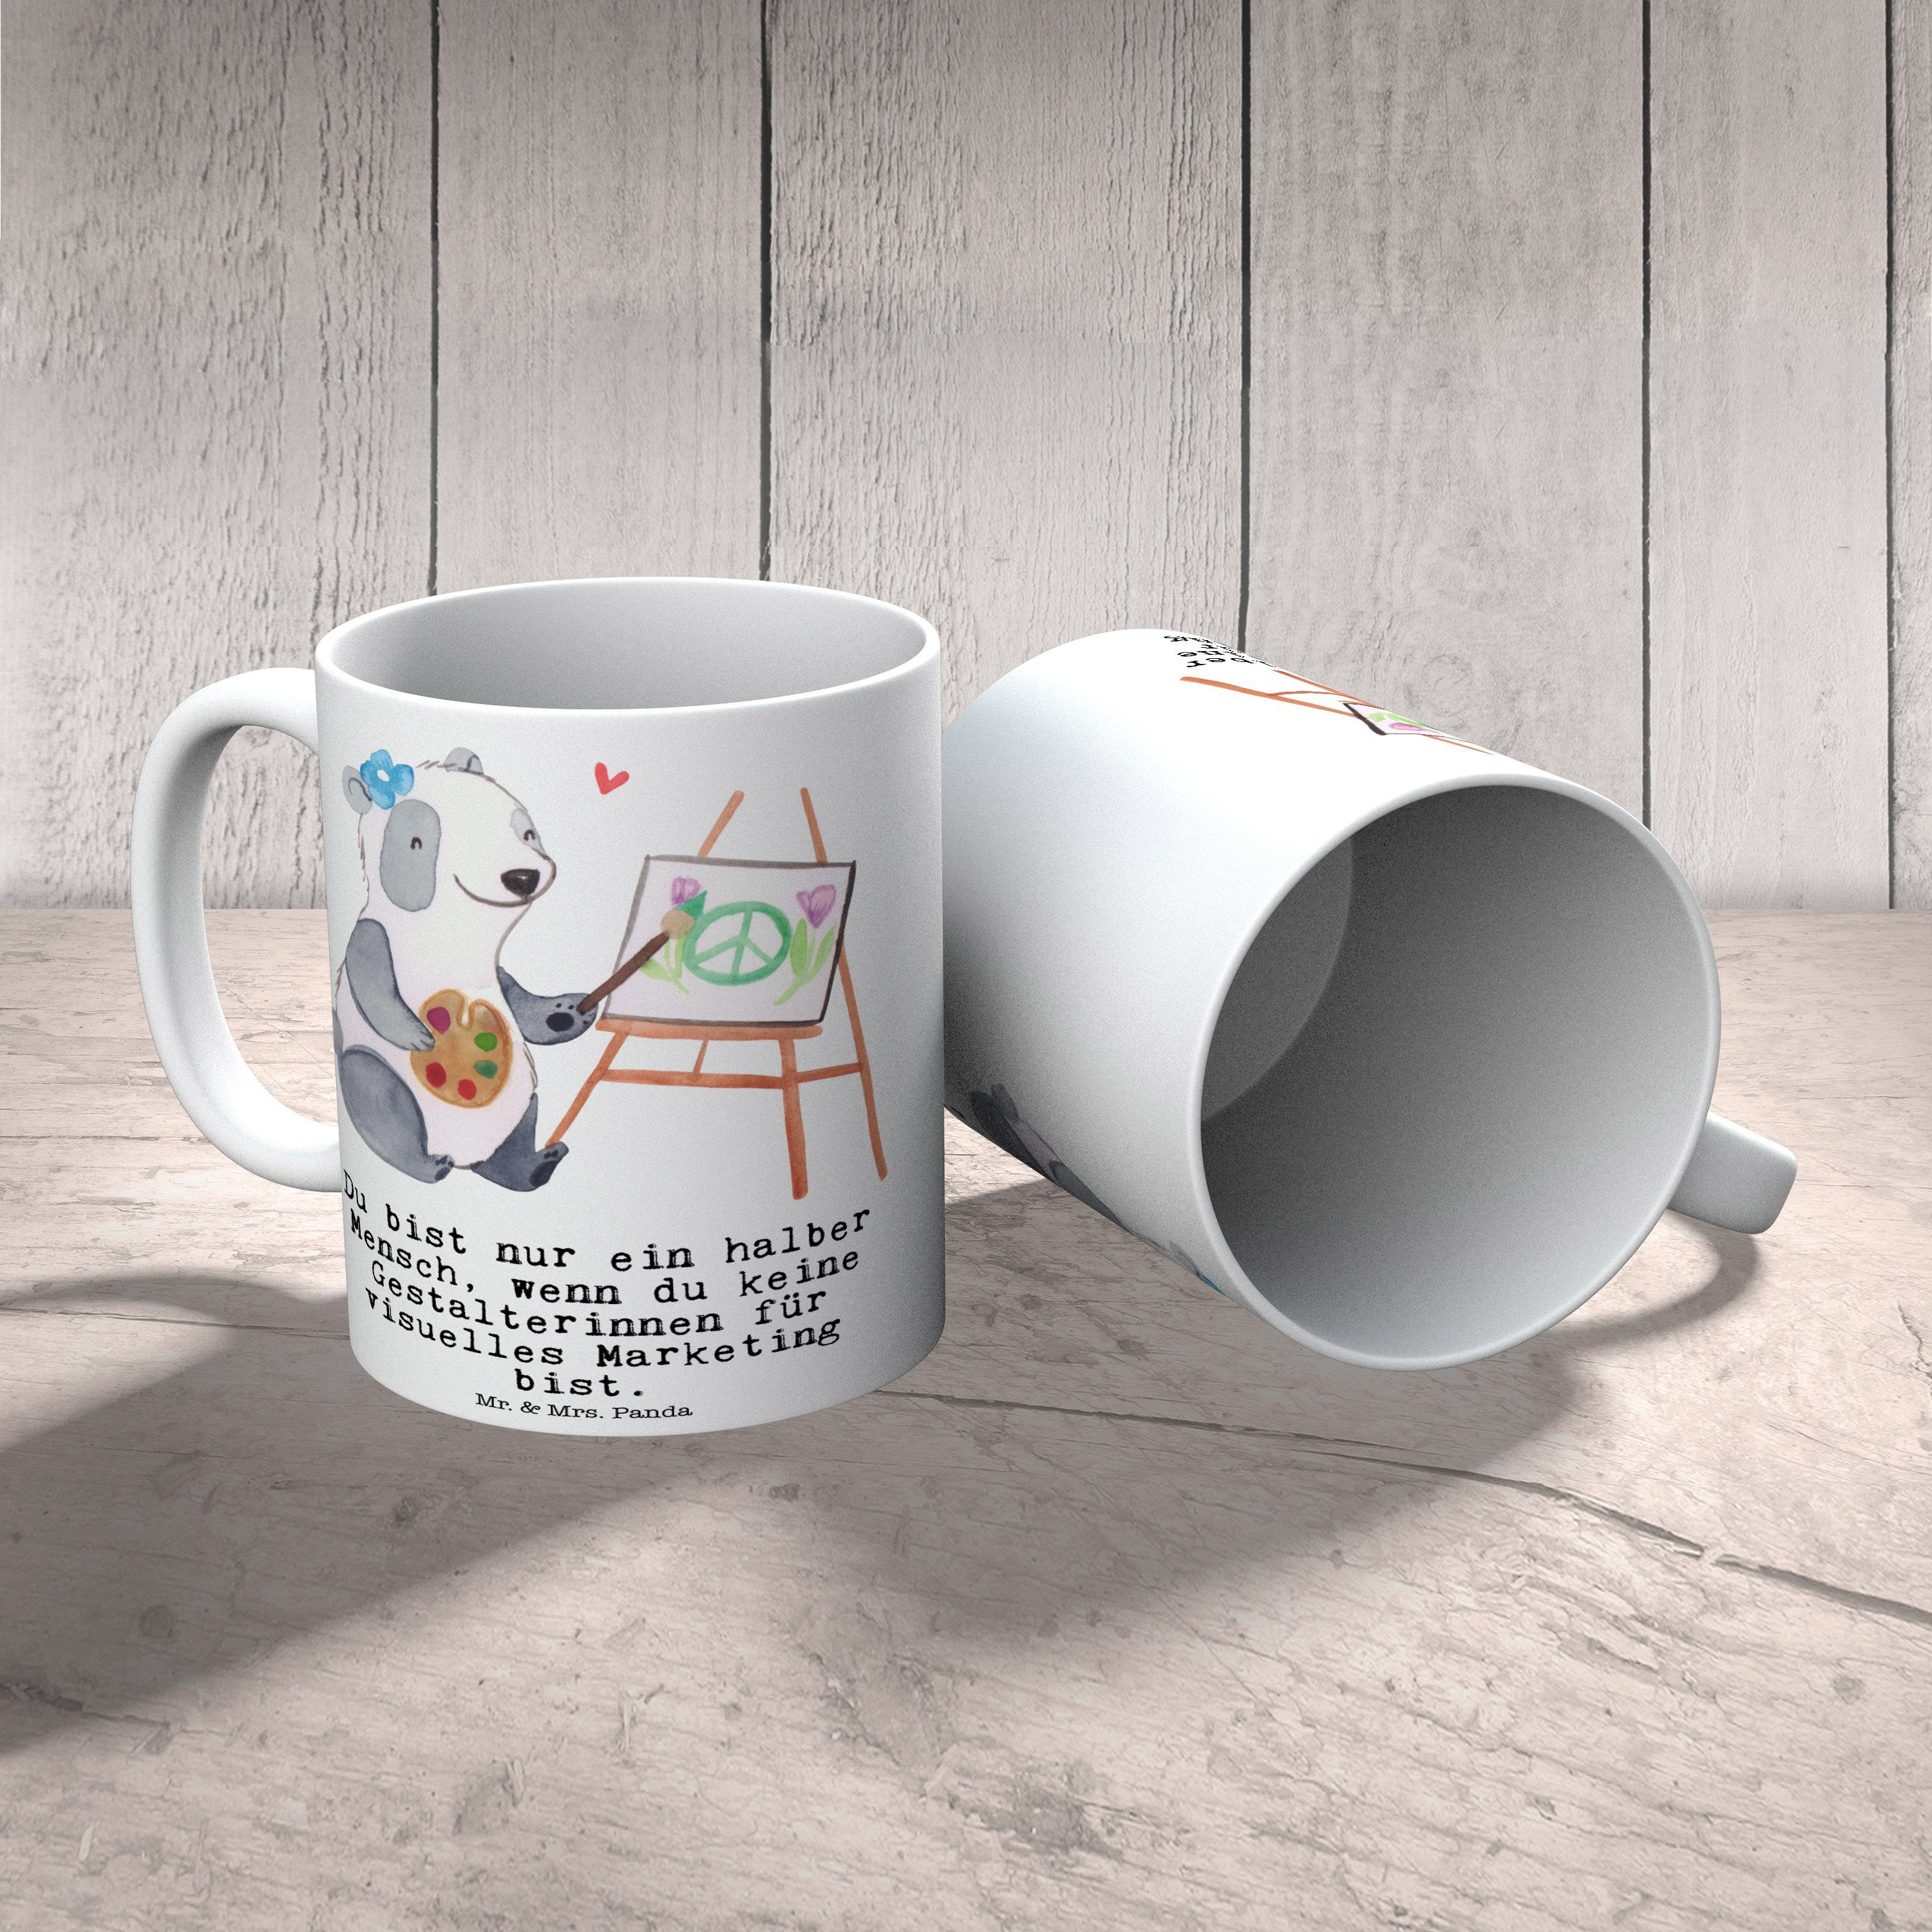 Da, Keramik für Gestalterinnen Marketing Weiß Tasse mit Panda Mr. Geschenk, visuelles & - - Mrs. Herz